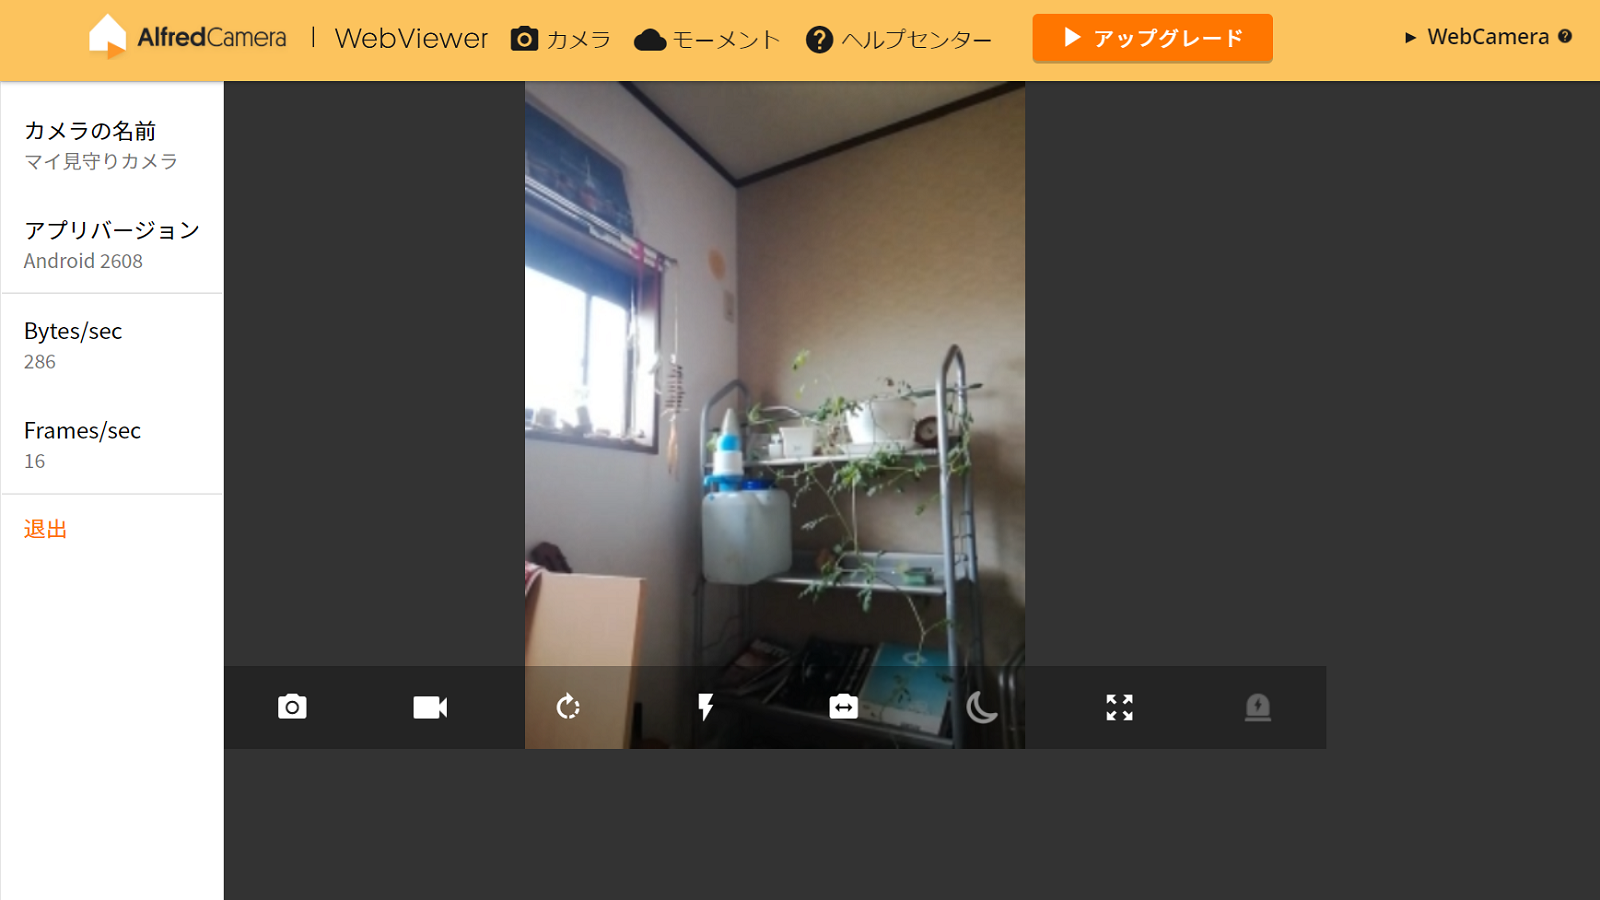 使っていないスマホが防犯 見守りカメラになる無料アプリ ライフハッカー ジャパン